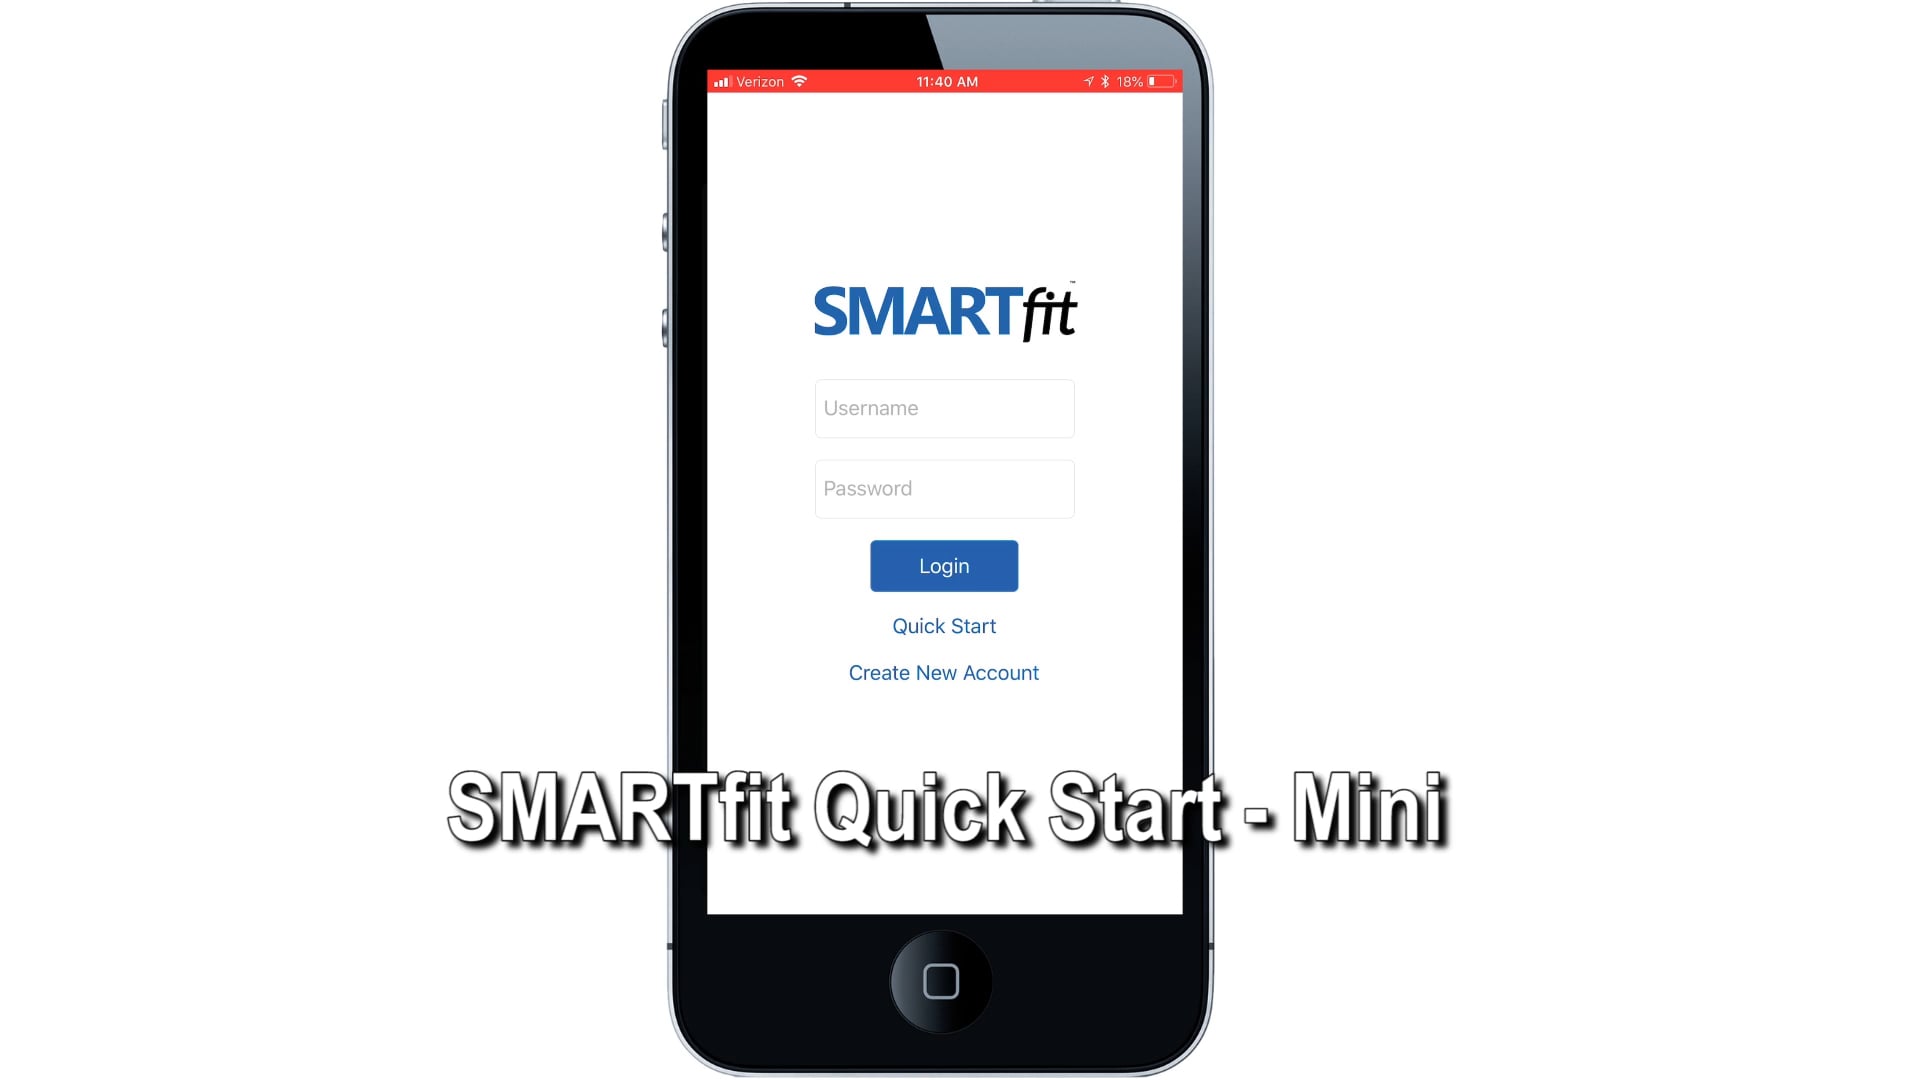 SMARTfit Quick Start - Mini